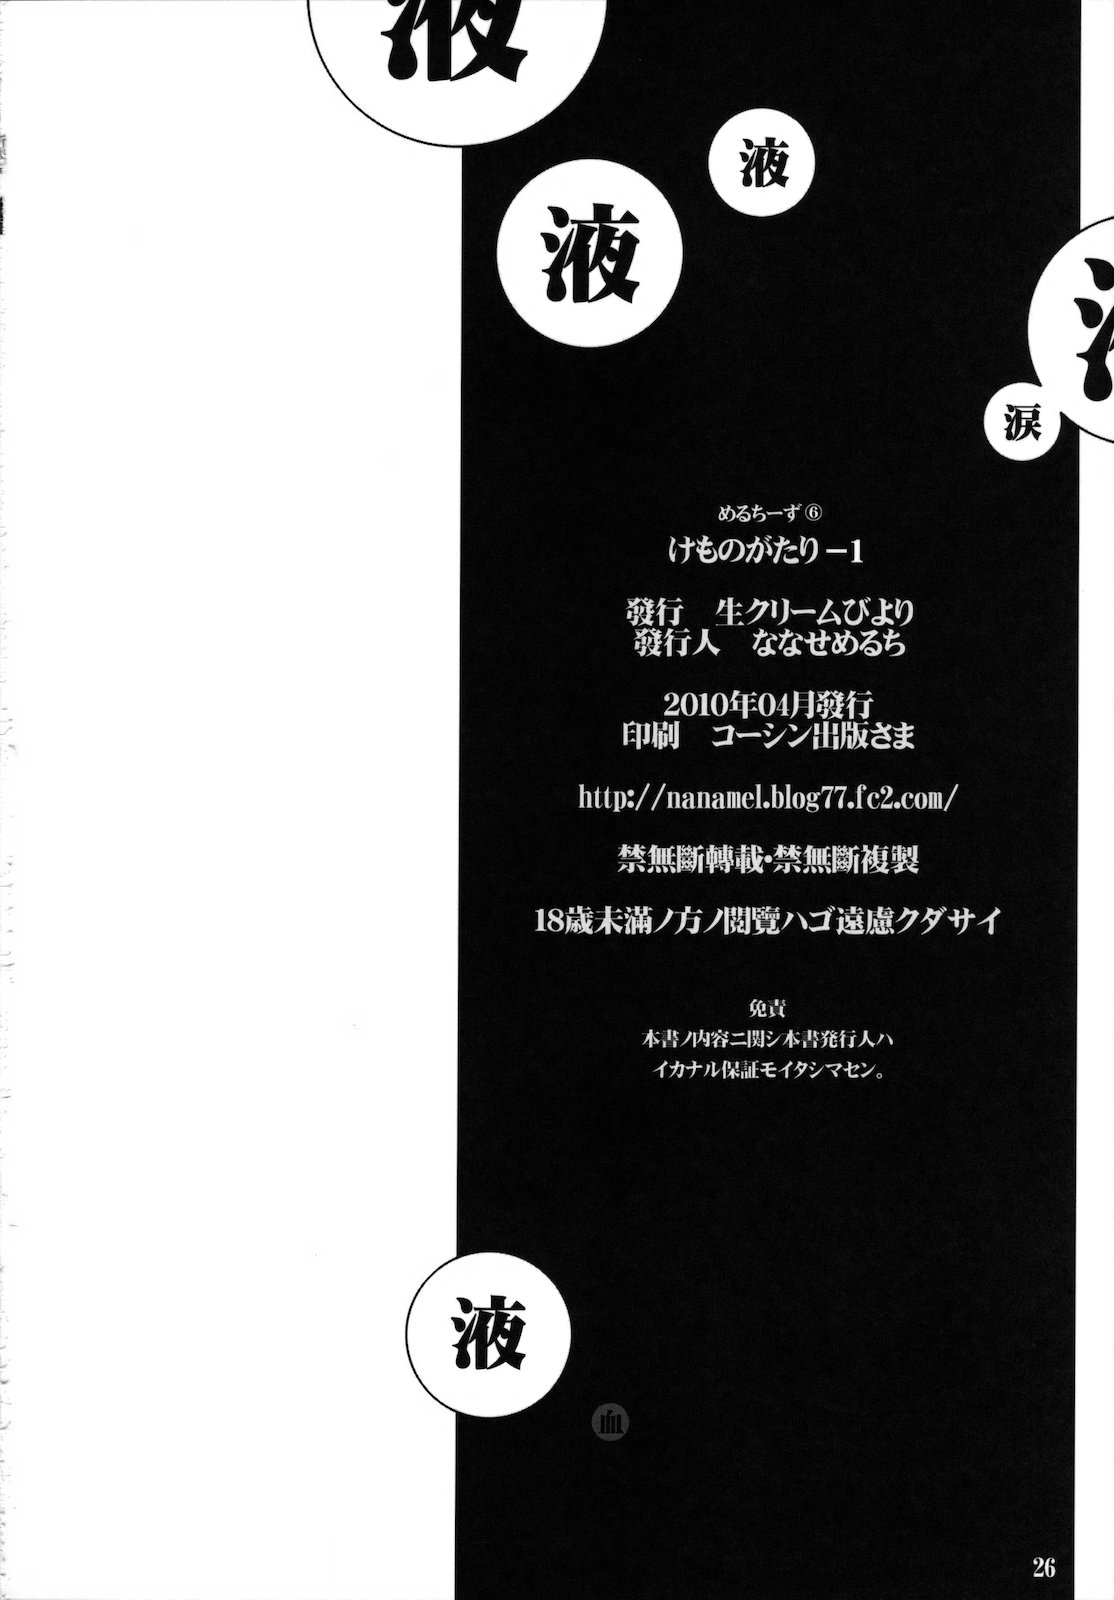 (COMIC1☆4) [Nama Cream Biyori] Kemonogatari -1 (Bakemonogatari) (COMIC1☆4) (同人誌) [生クリームびより] けものがたり-1 (化物語)